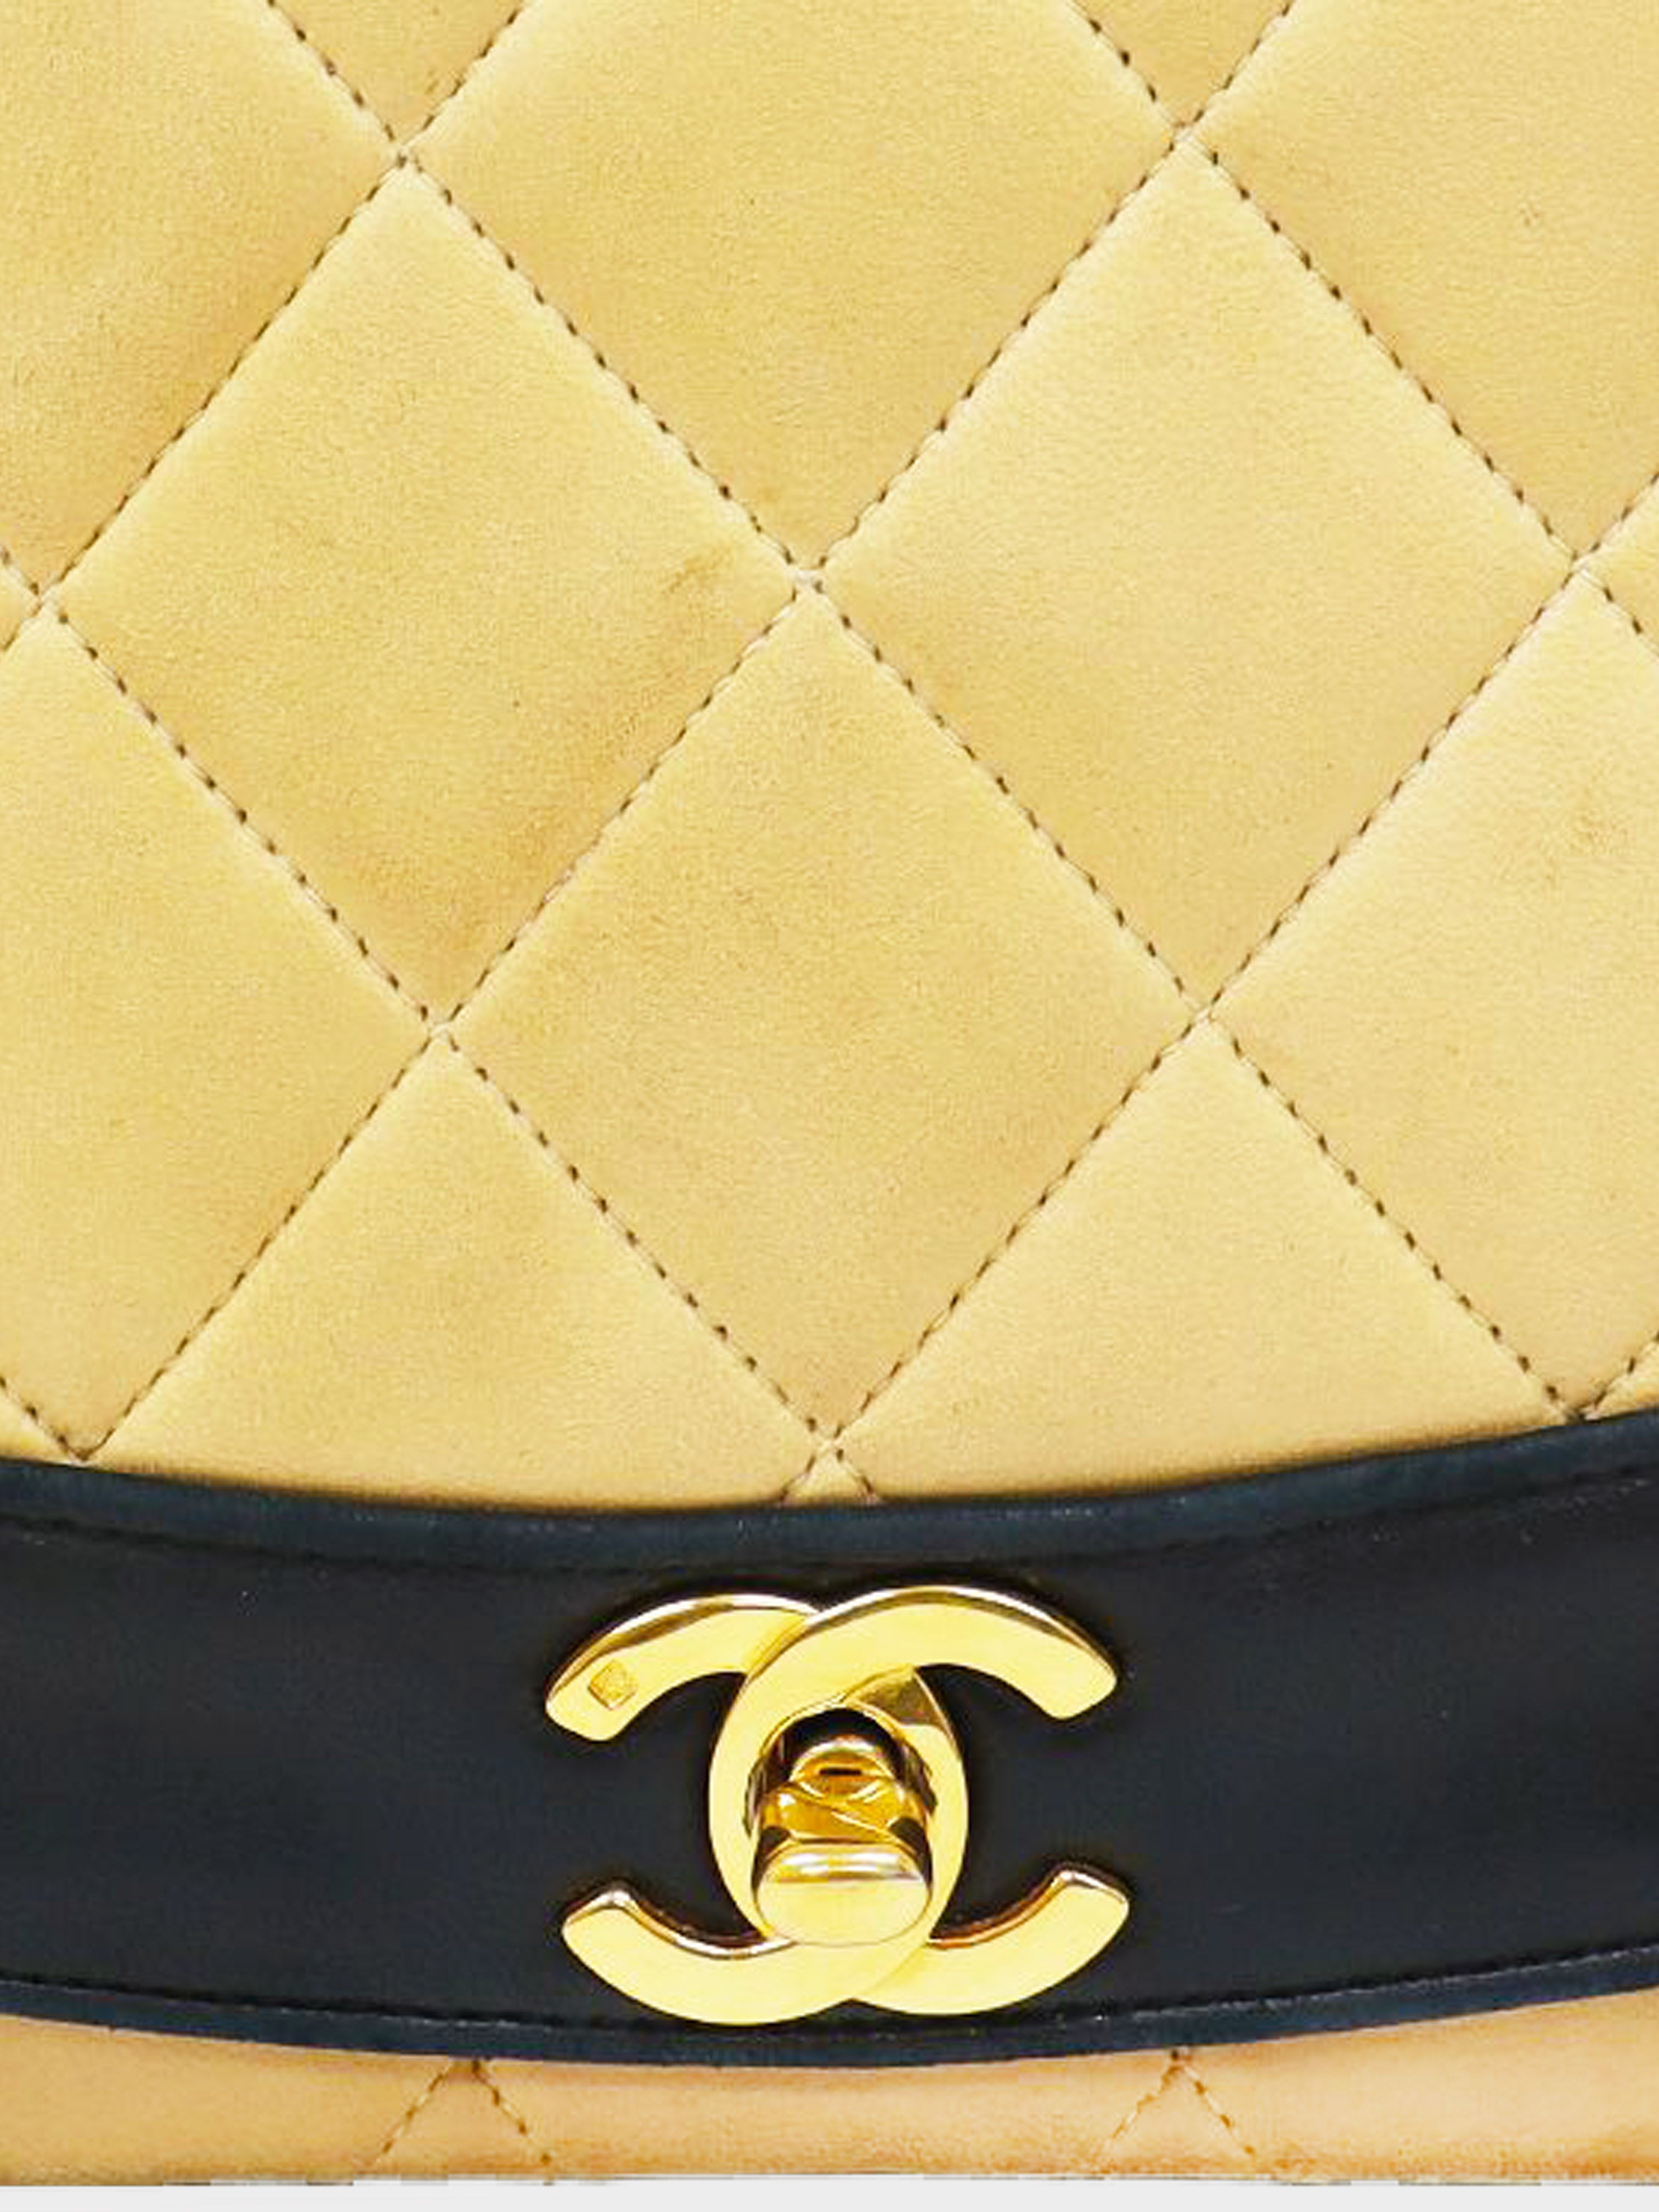 Chanel shoulder bag ladies' beige black gold matelasse bicolor